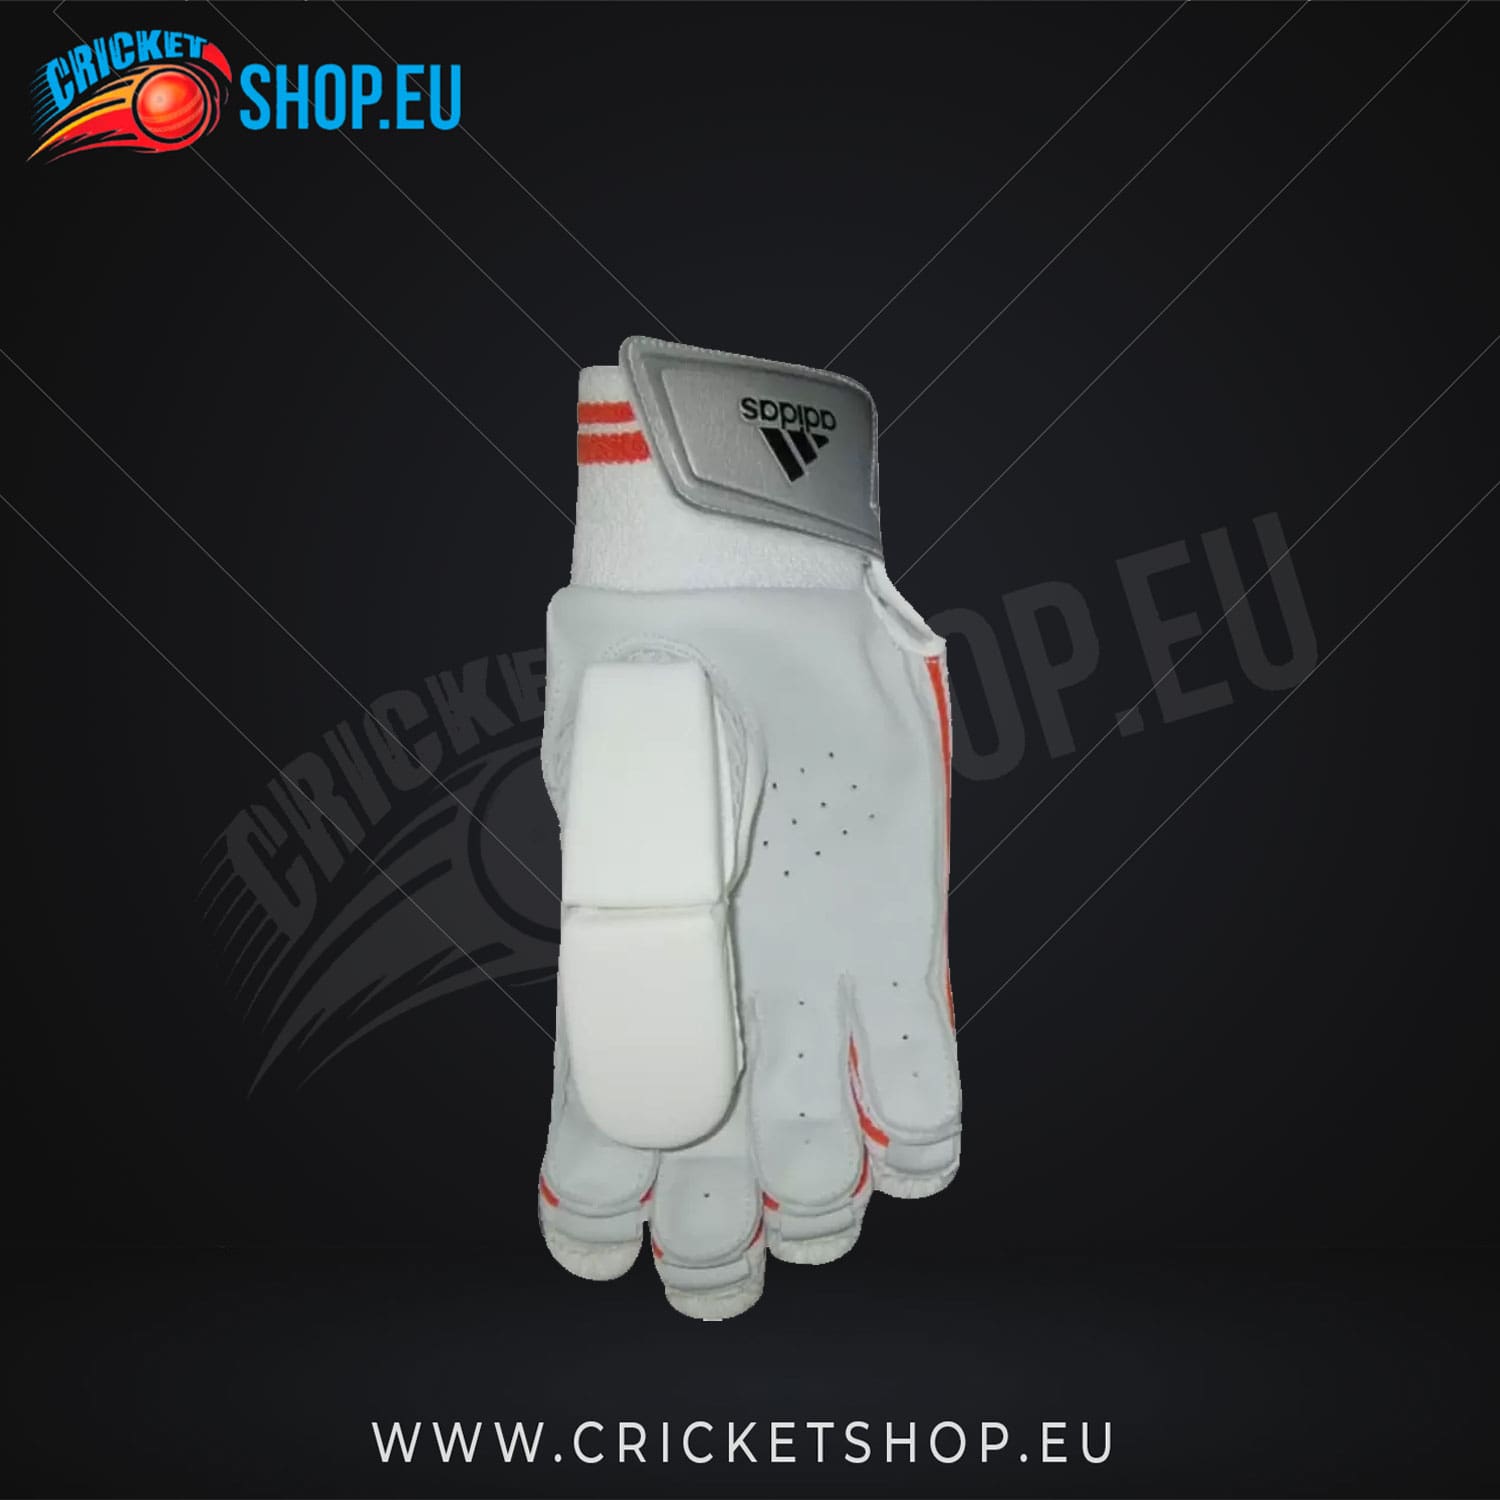 Adidas Pellara 4.0 Cricket Batting Gloves